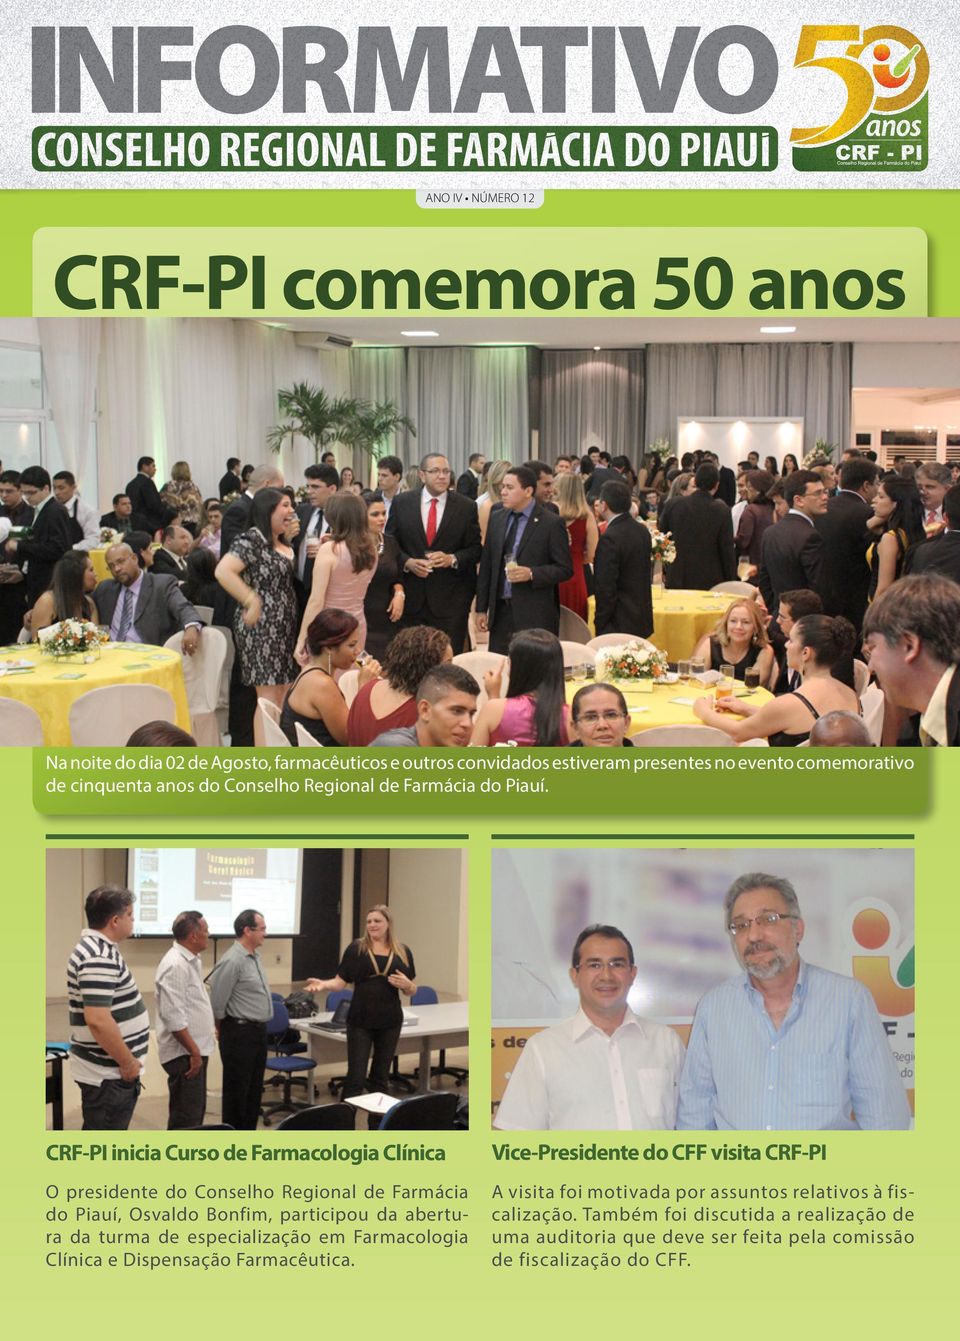 CRF-PI inicia Curso de Farmacologia Clínica O presidente do Conselho Regional de Farmácia do Piauí, Osvaldo Bonfim, participou da abertura da turma de